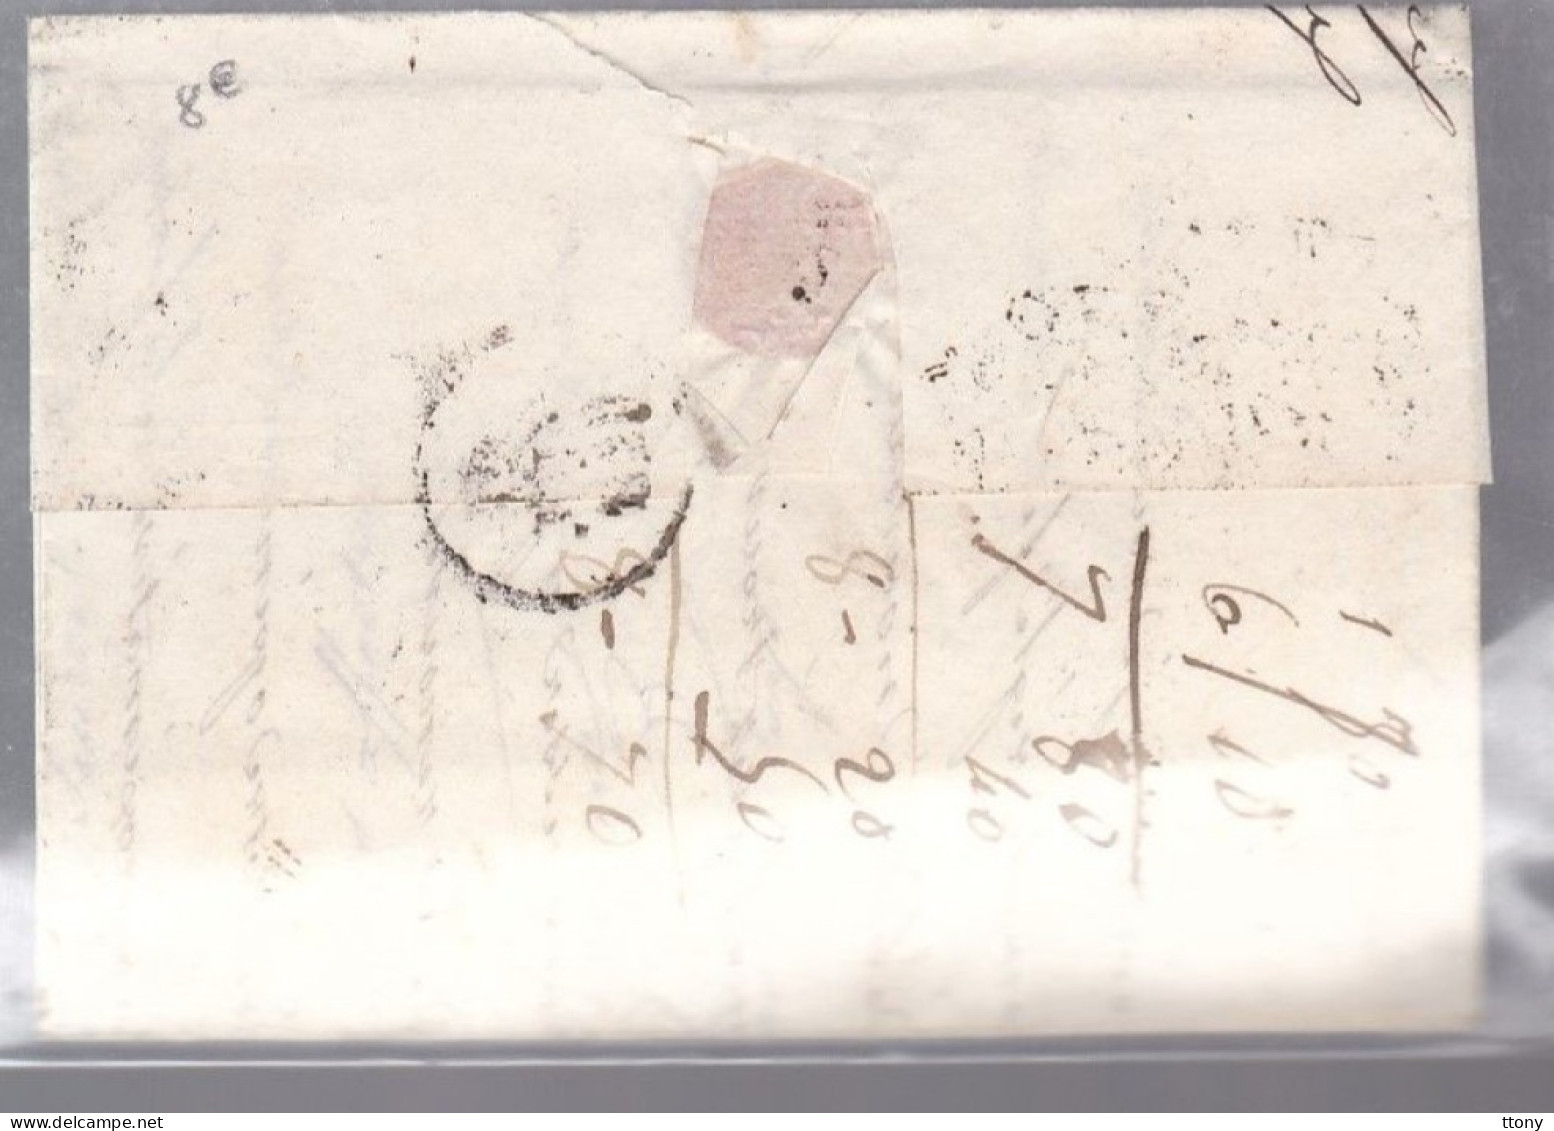 lettre dite précurseurs   sur  lettre    marque  postale  70 Chalon - Sur  - Saône dateur A 18 juin 1829  pour Seurre